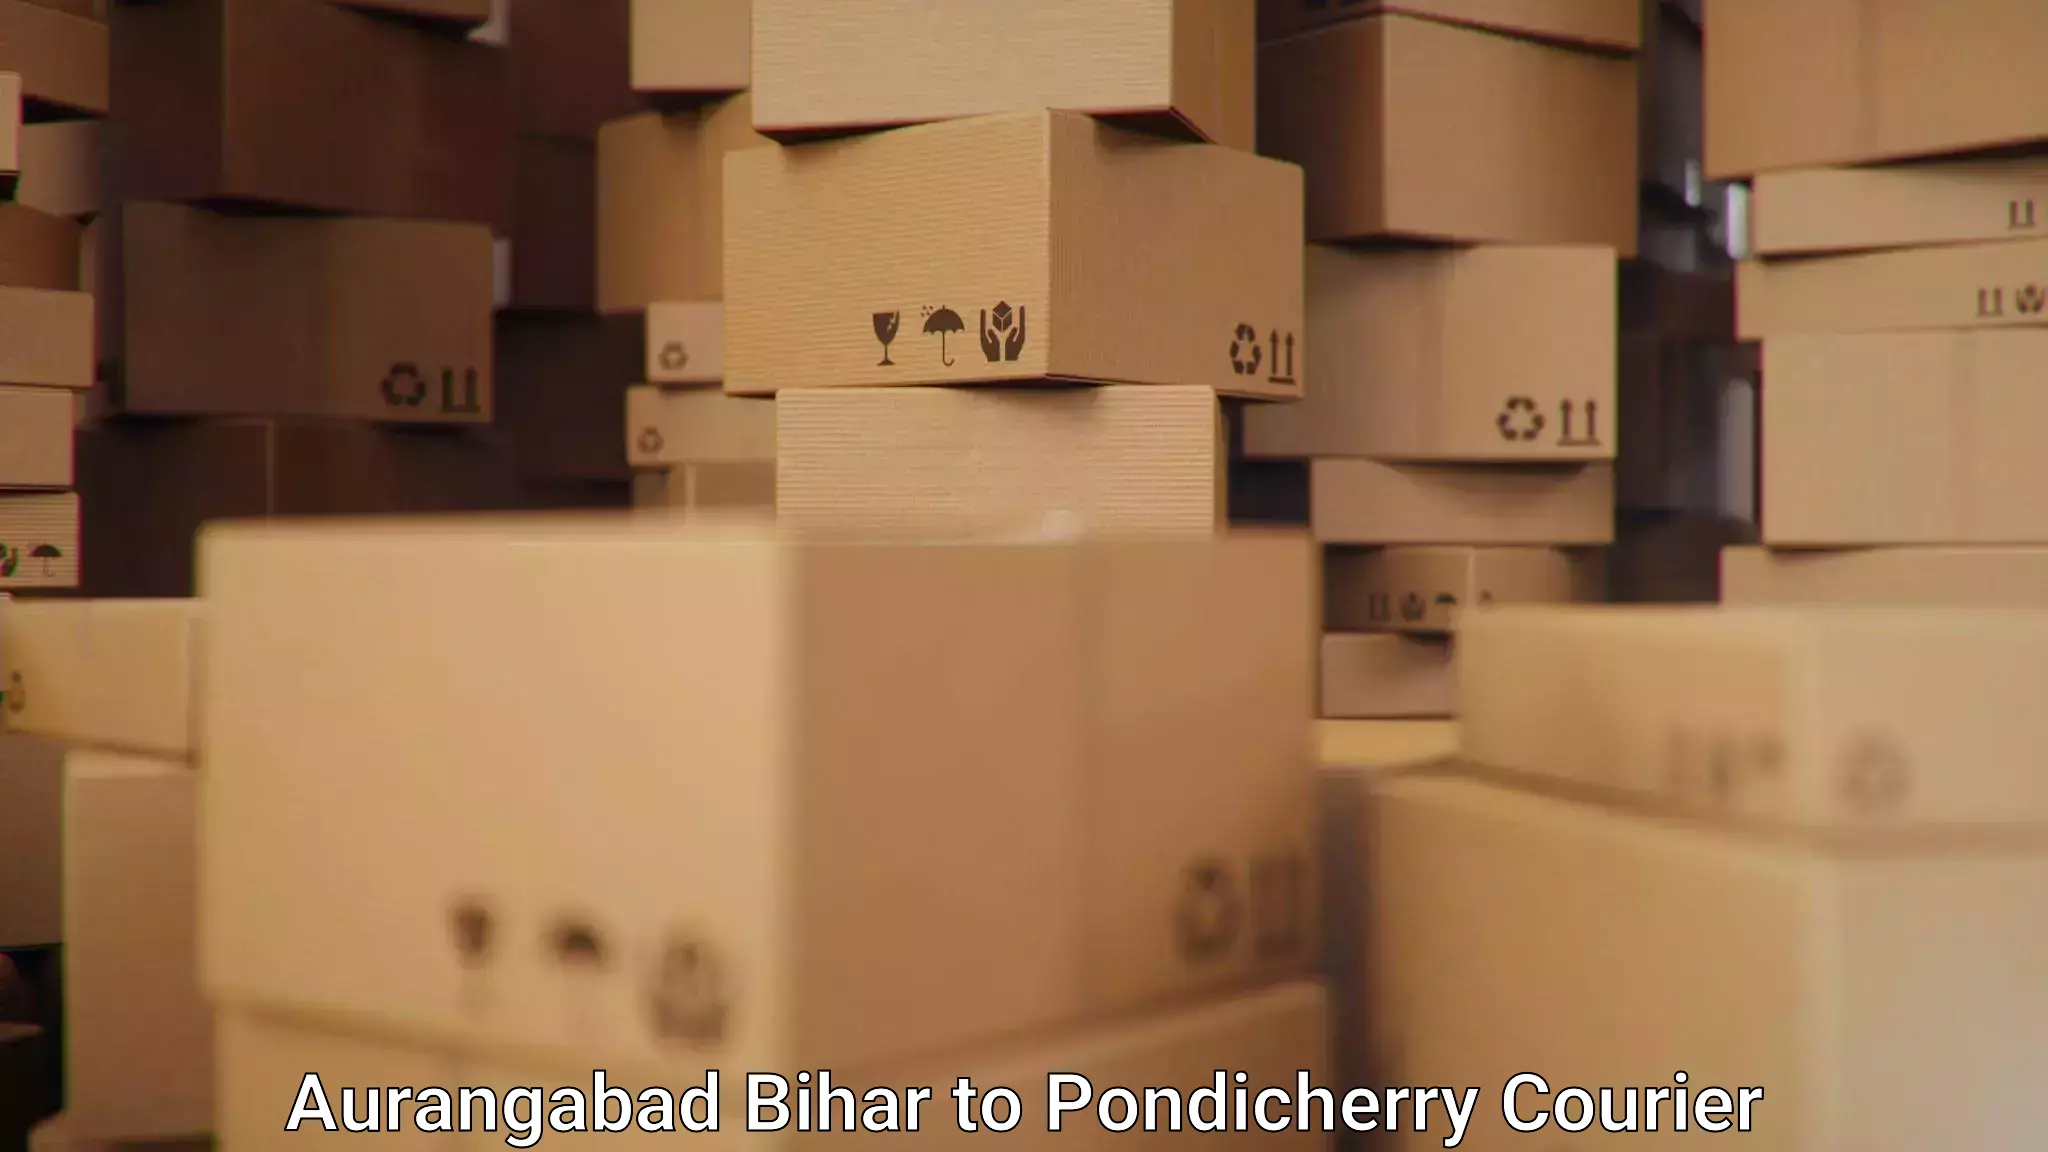 User-friendly courier app Aurangabad Bihar to Karaikal